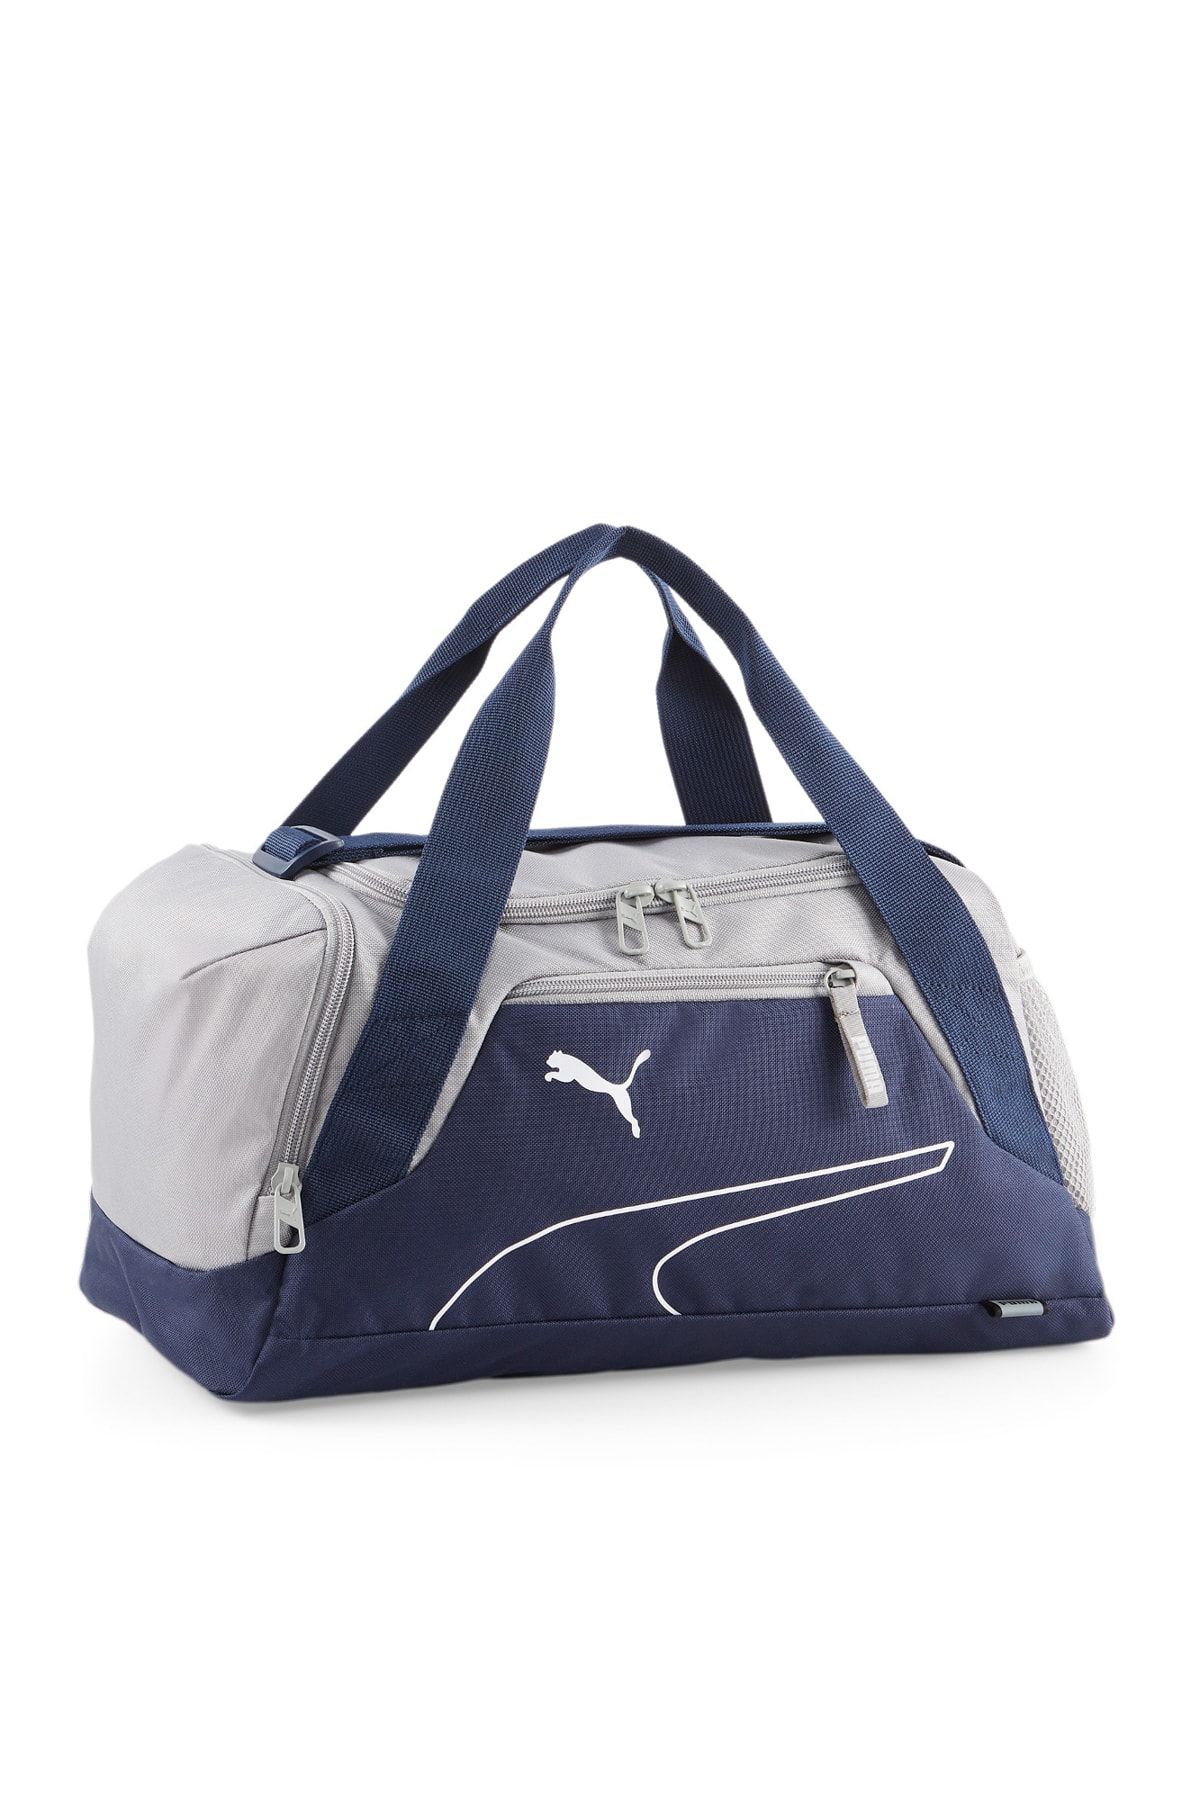 Puma Fundamentals Sports Bag XS PUMA Navy-Con